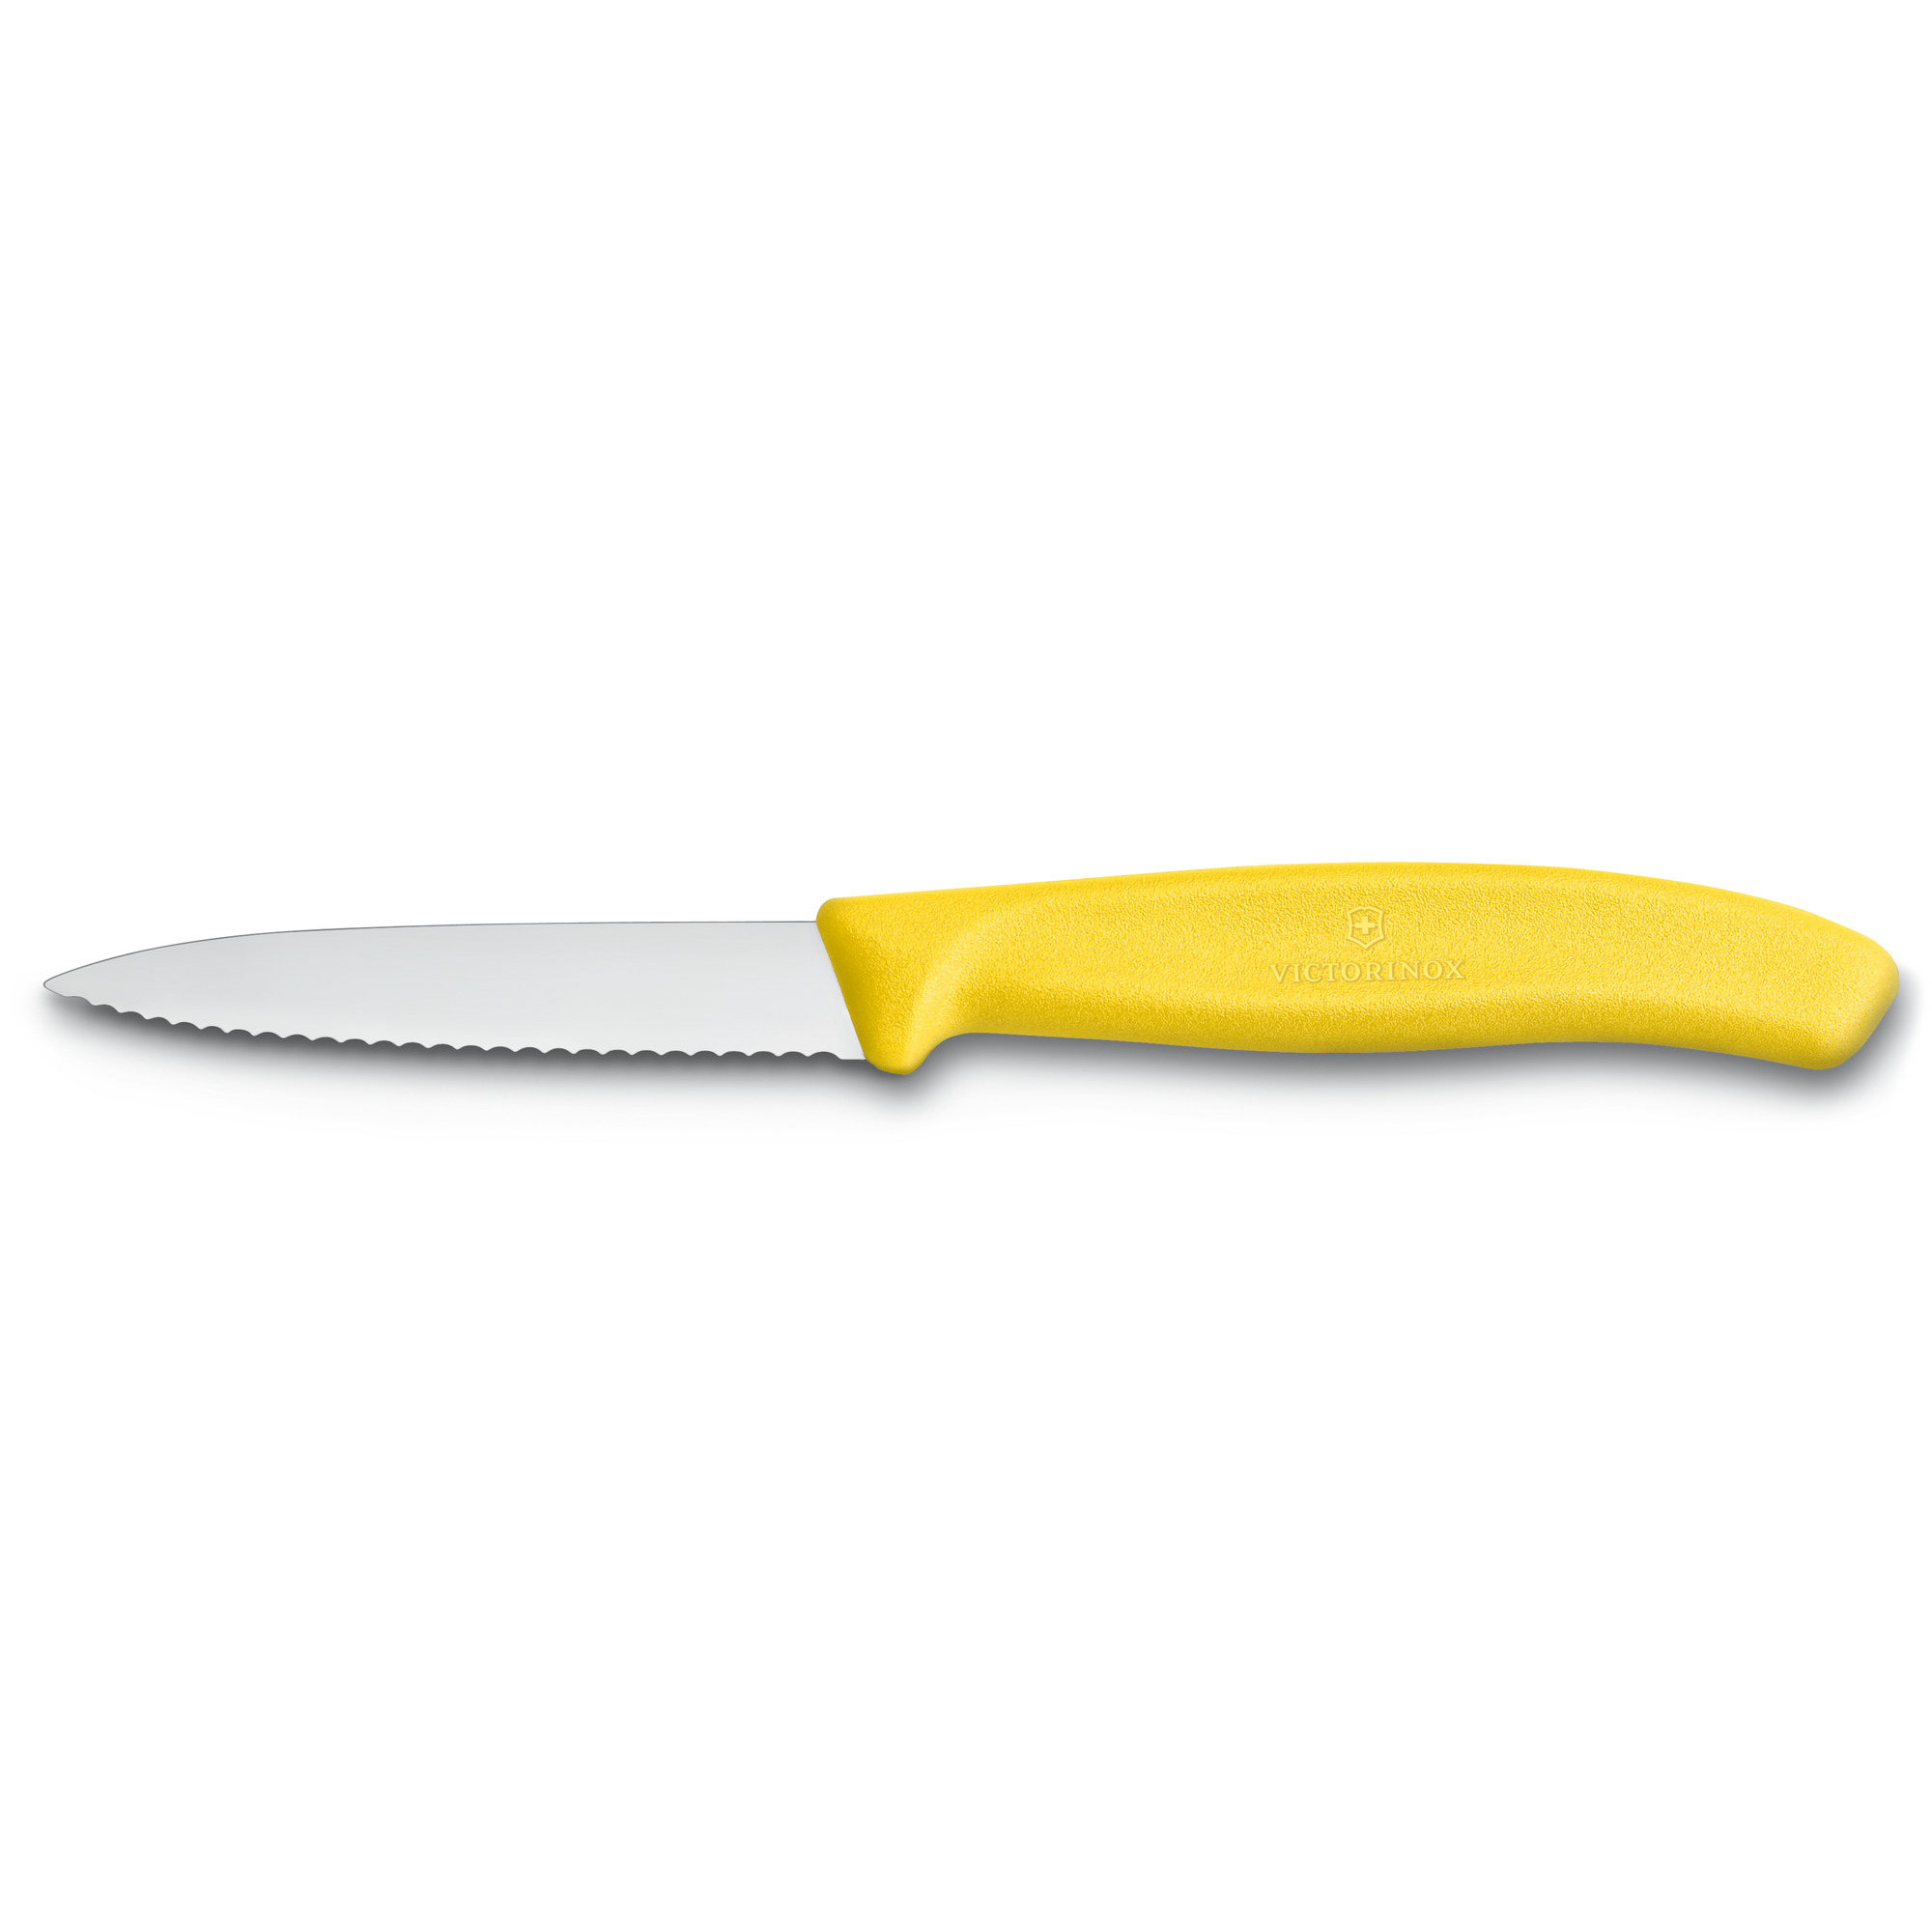 Cuchillo pelador dentado / de verduras Swiss Classic 8 cm, amarillo